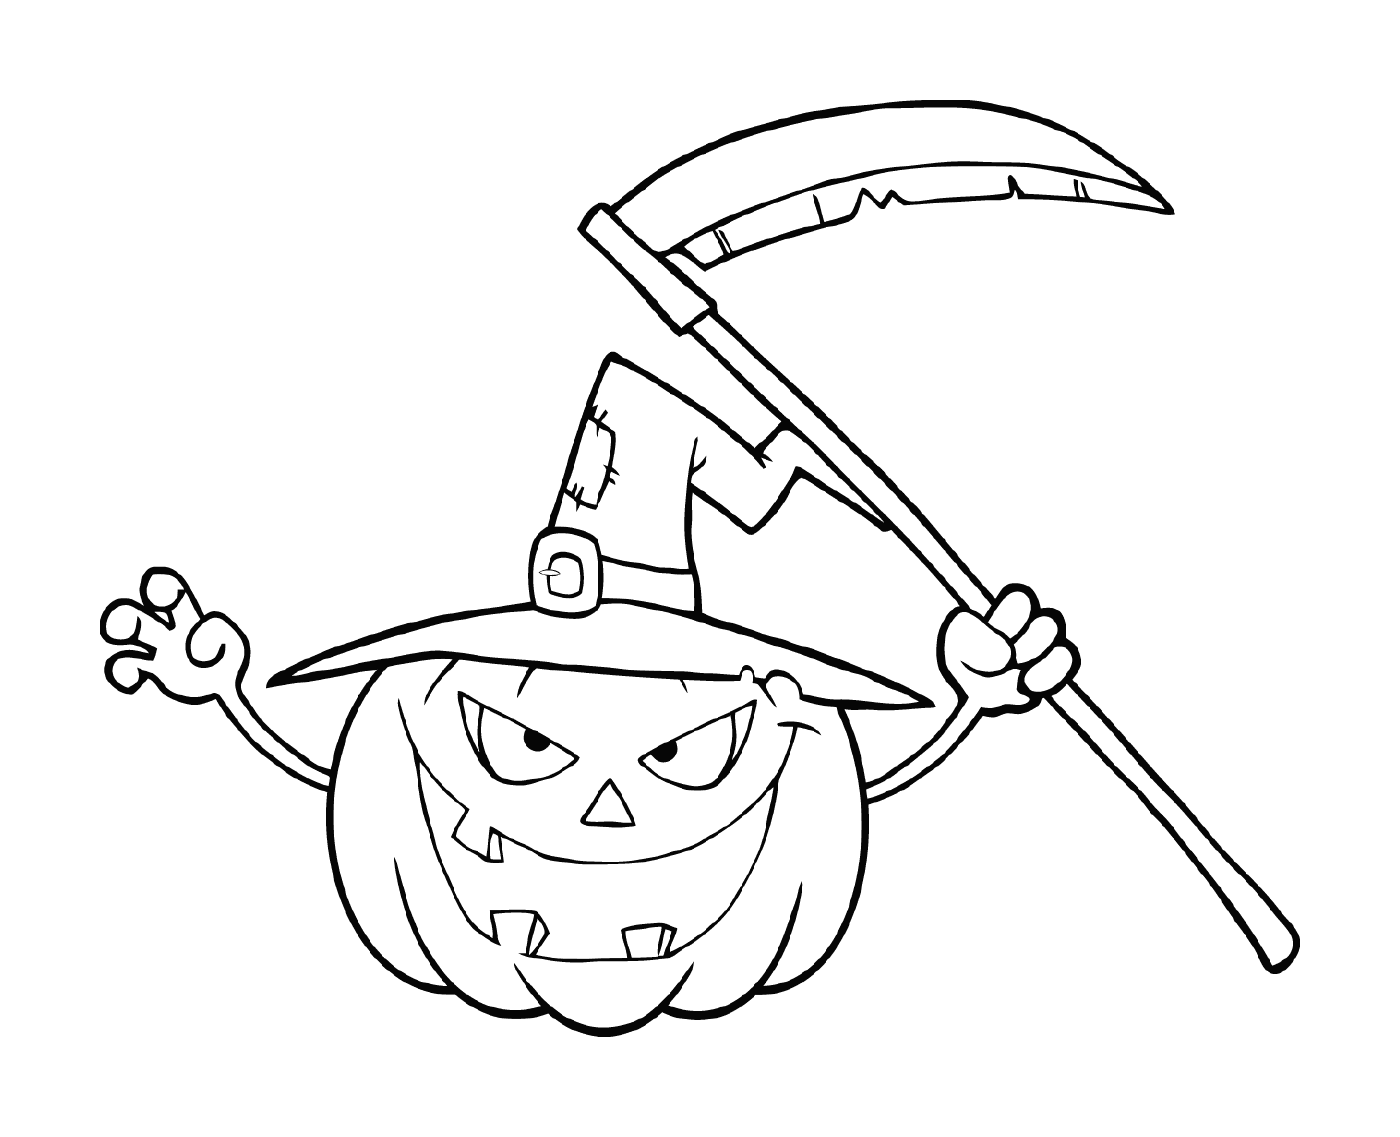  Calabaza de Halloween con sombrero de bruja 